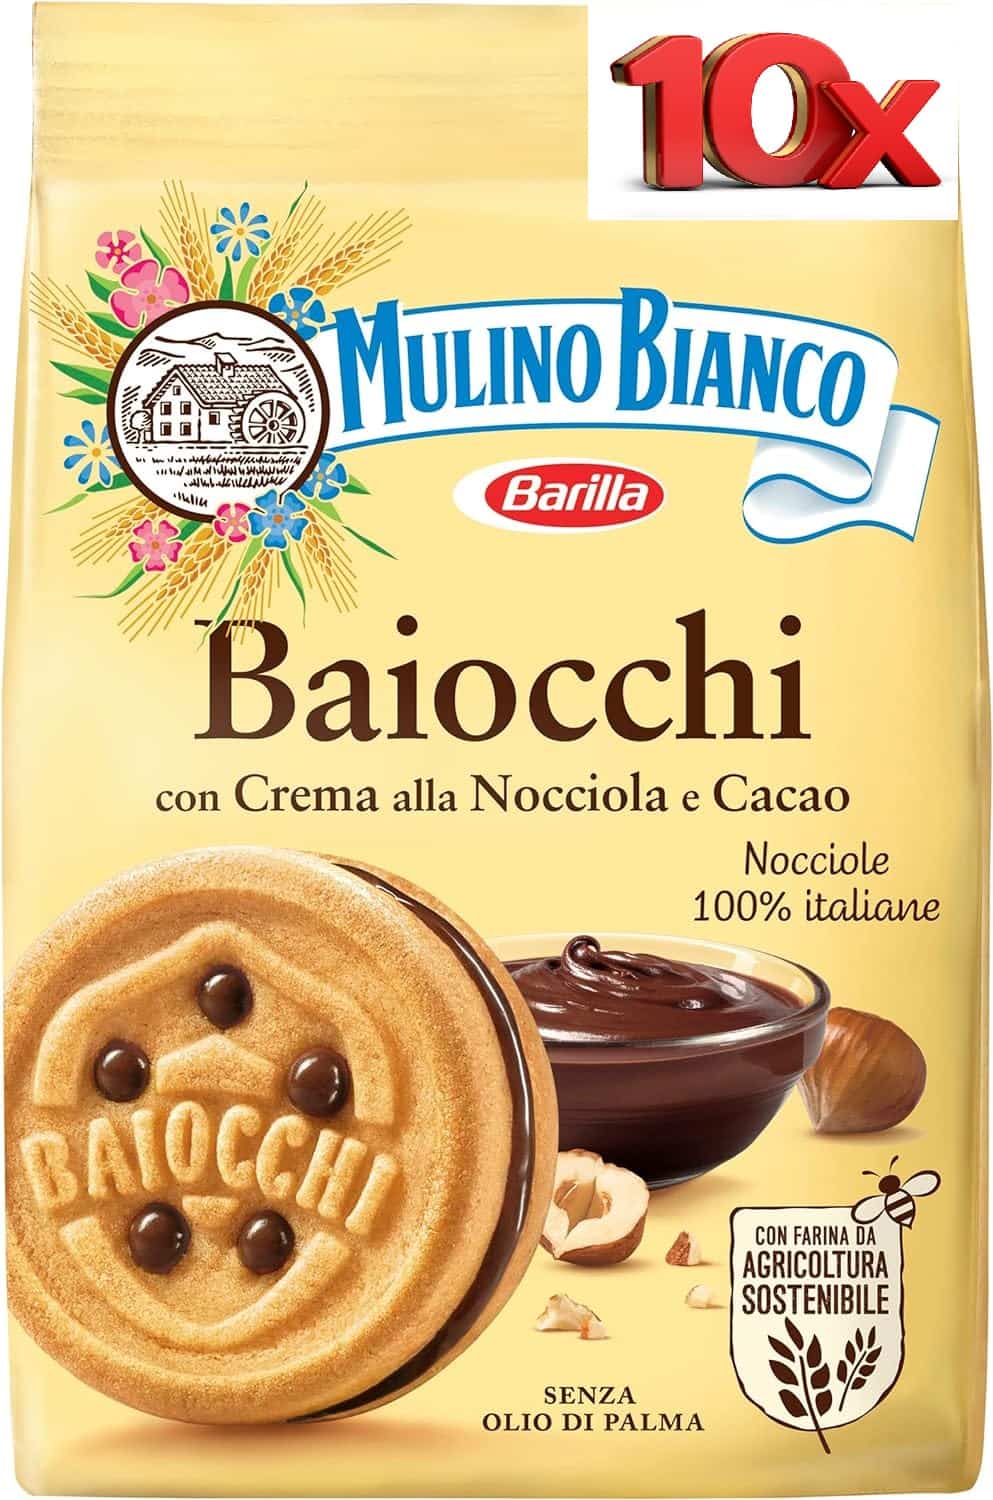 Mulino Bianco Baiocchi 10 confezioni da 260 g Biscotti Barilla a Nocciola 73252.